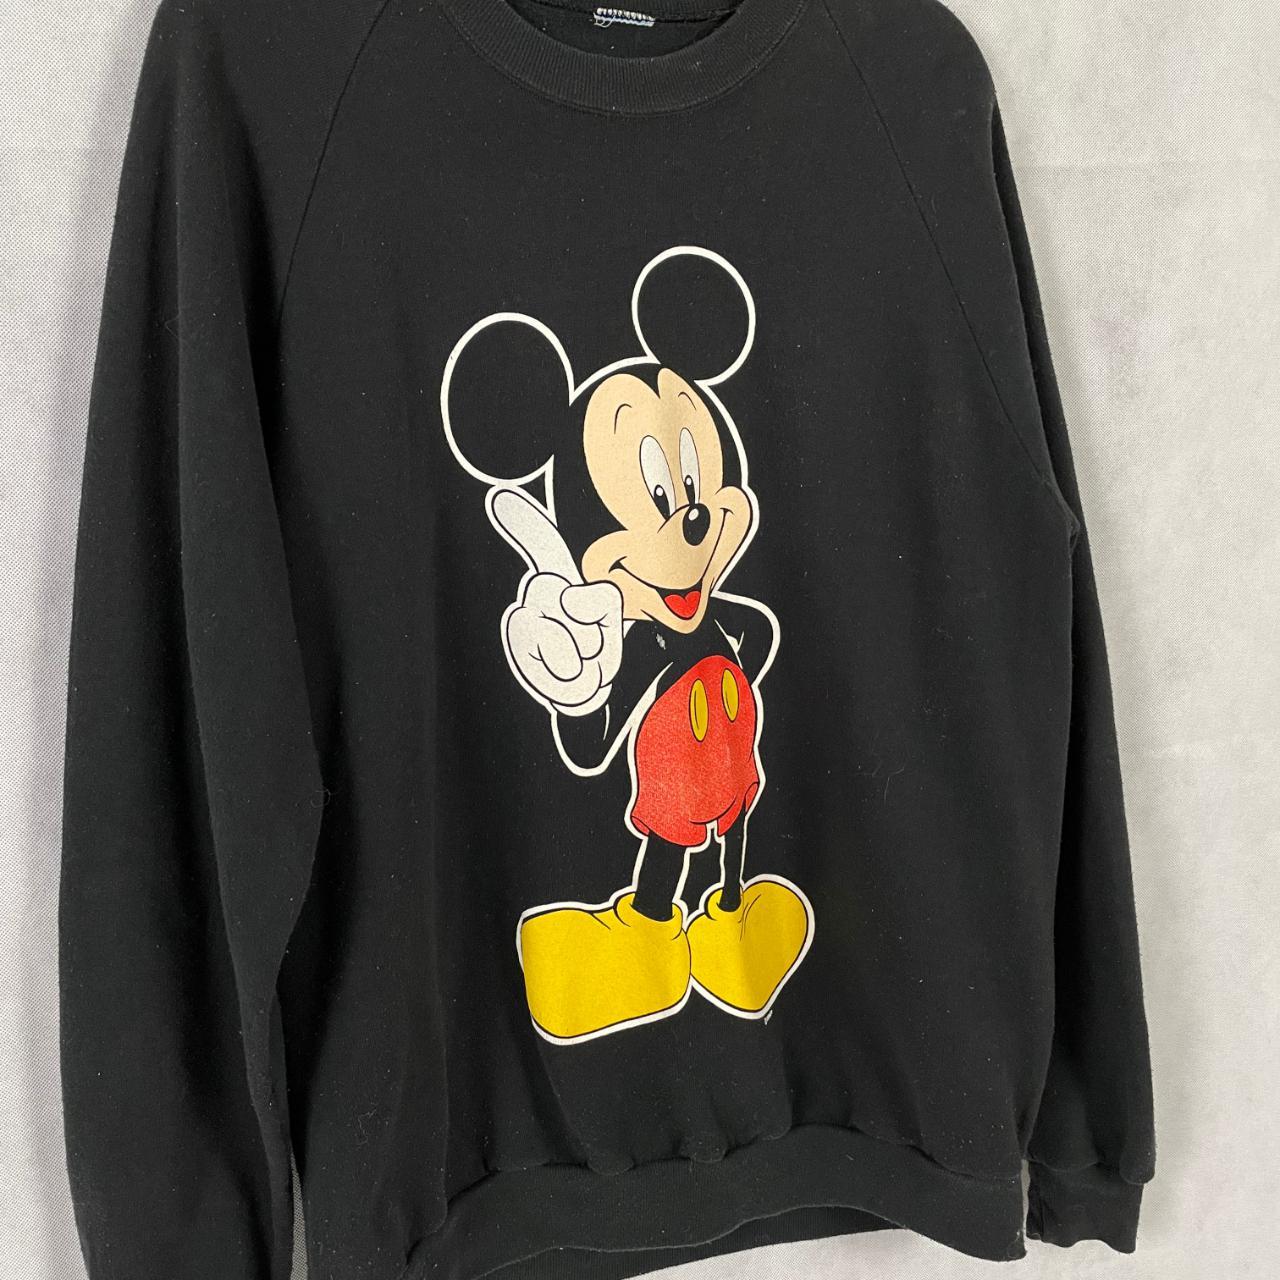 Vintage 80's Mickey Mouse Sweatshirt. I believe it... - Depop